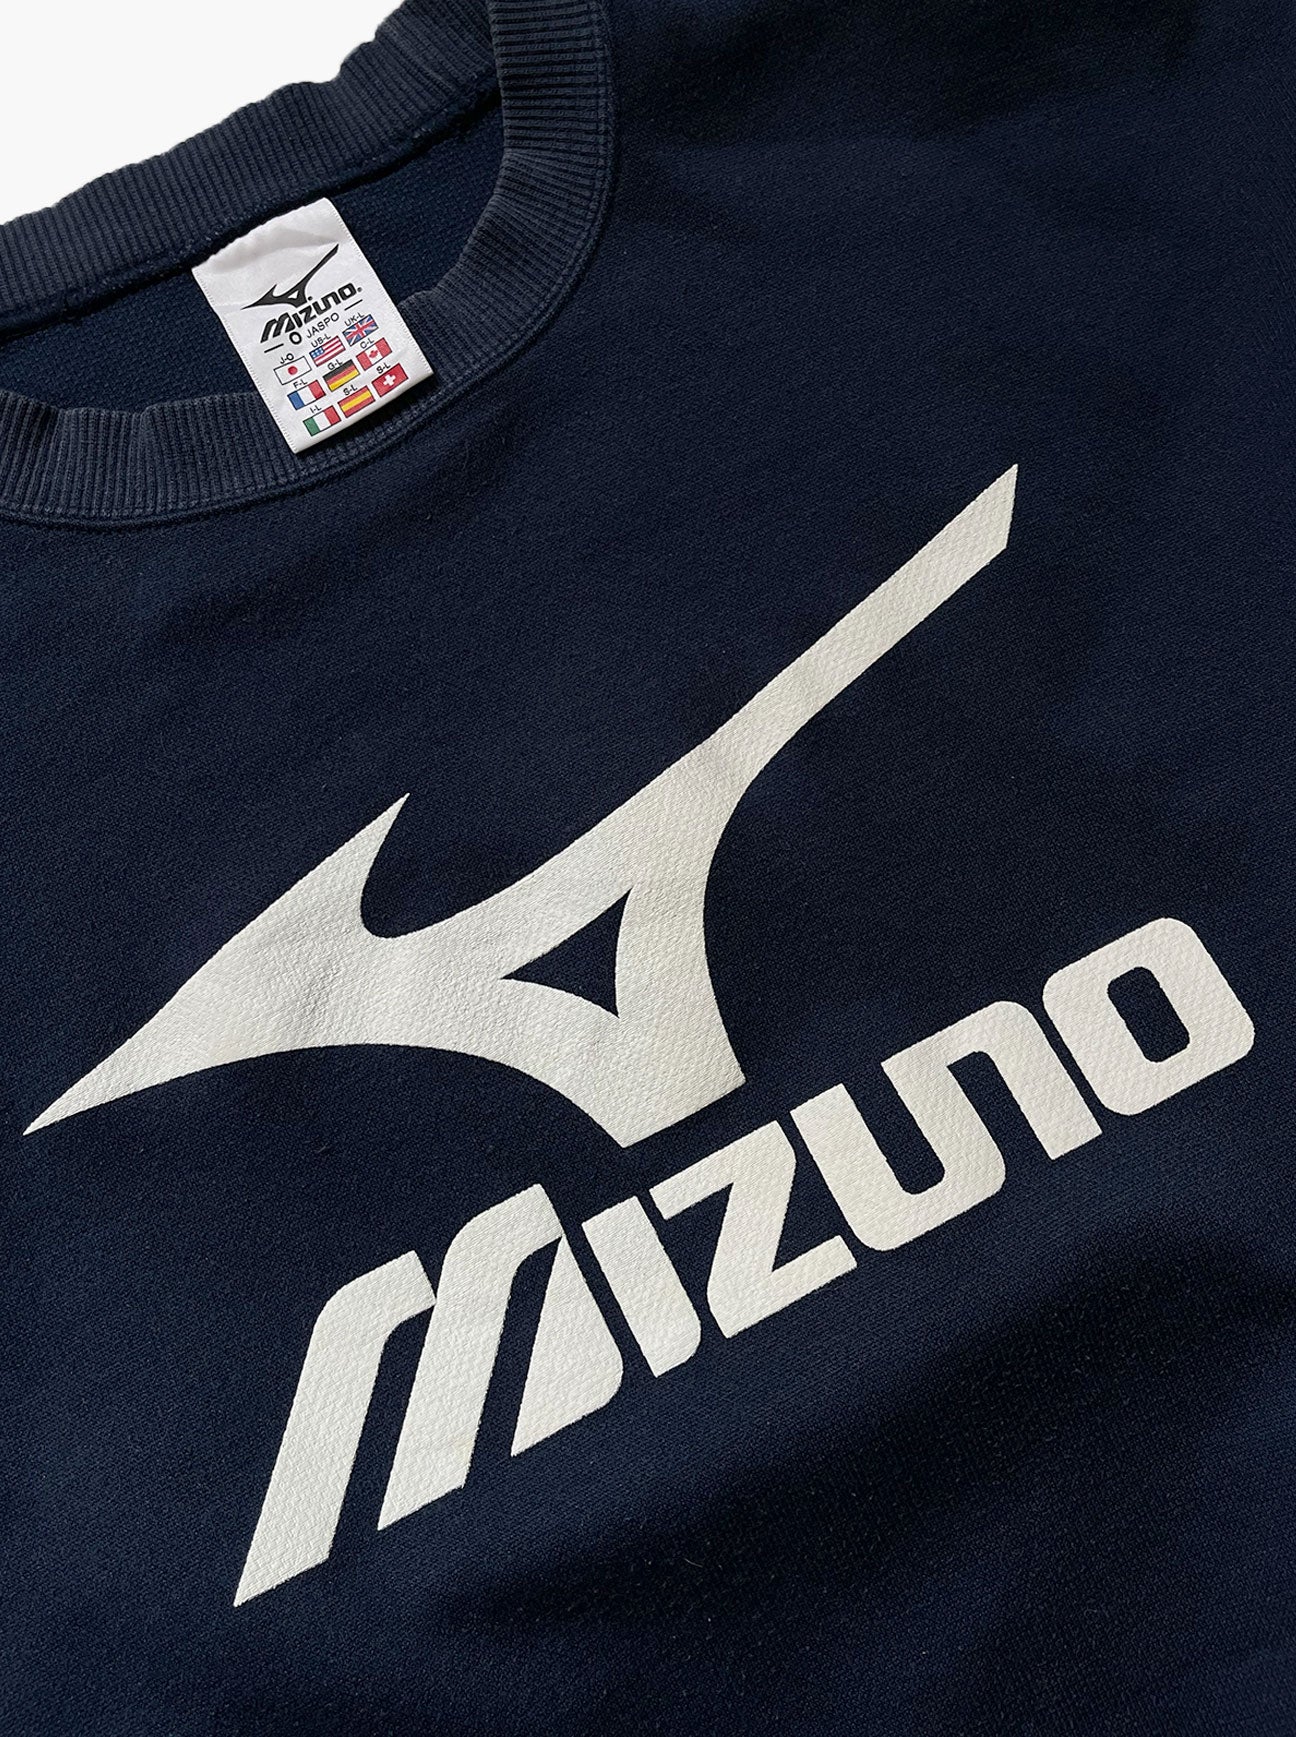 Vintage Mizuno crewneck sweatshirt detail